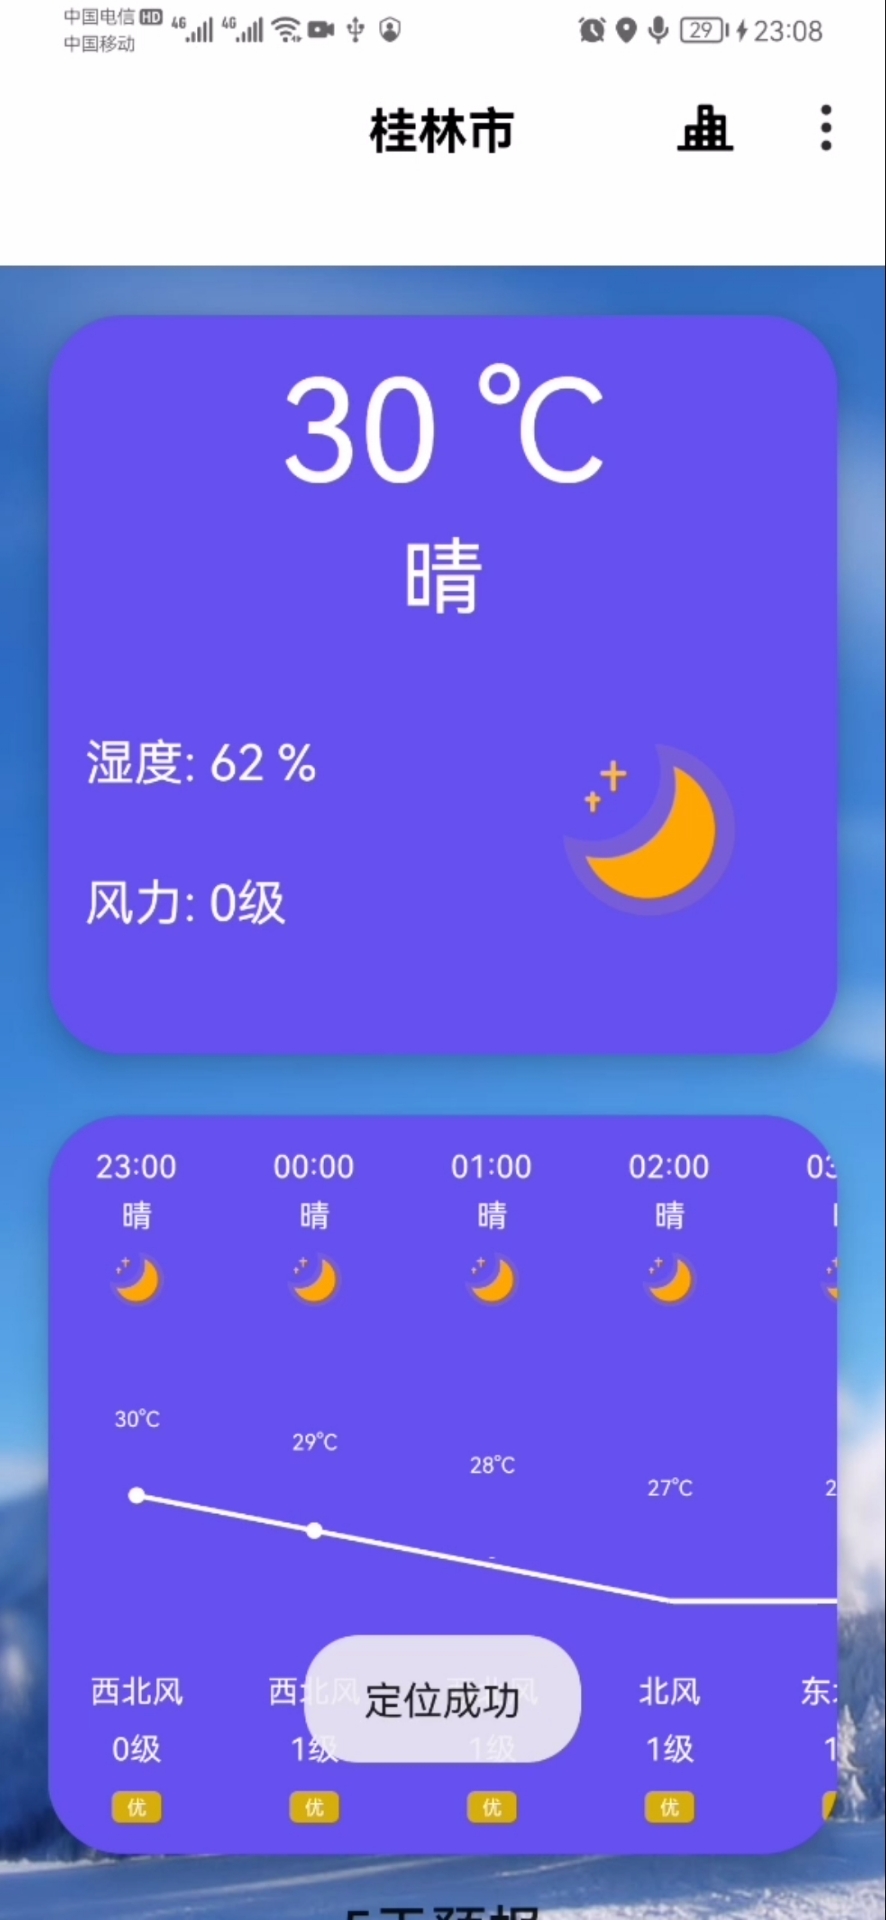 【包远程调试】安卓Android天气/天气预报/天气详情/高